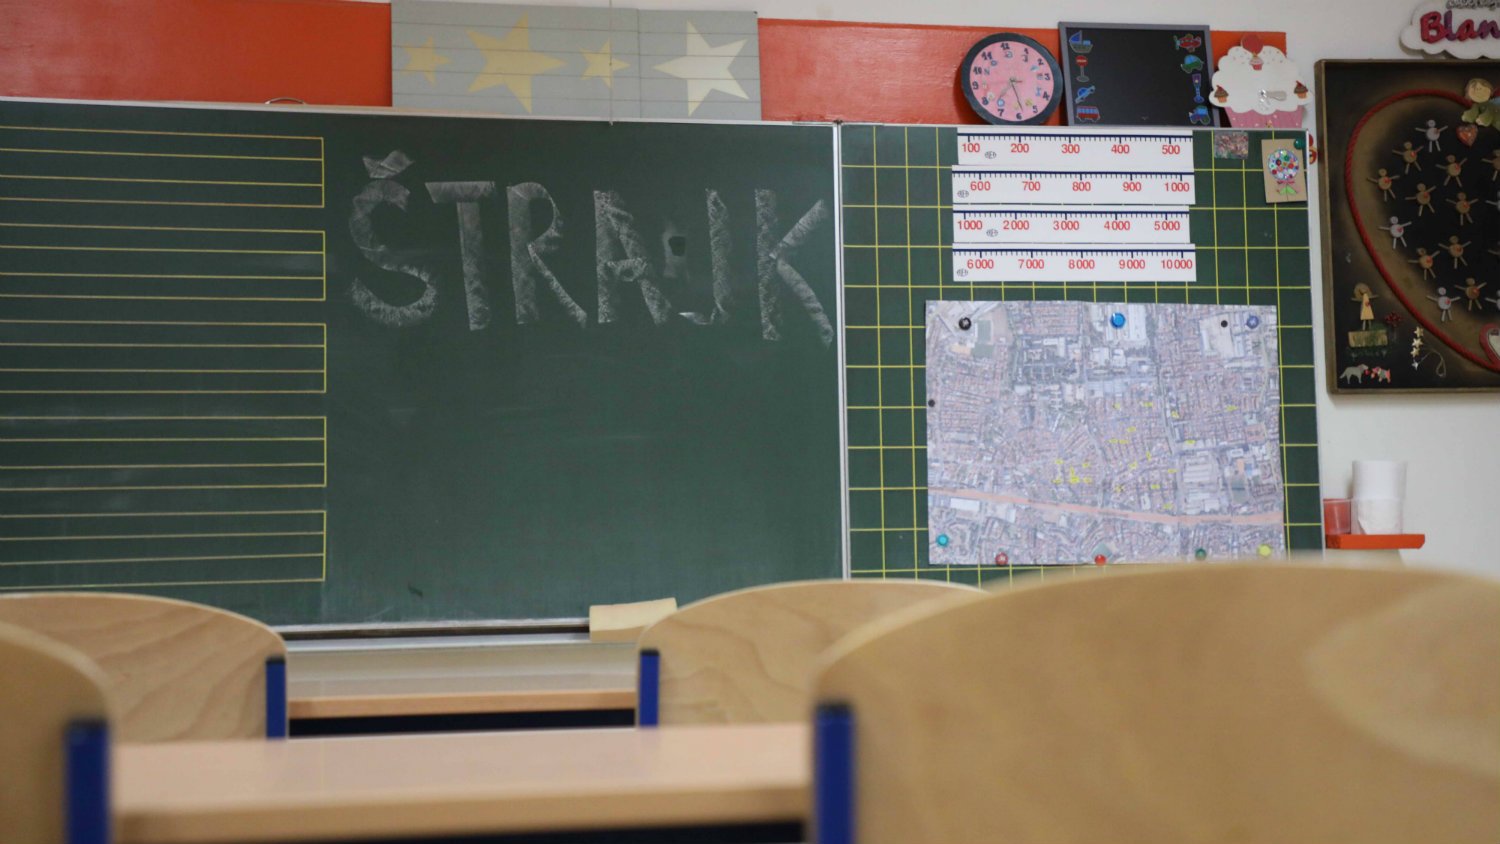 Hrvatski nastavnici se izjašnjavaju o ponudi vlade, štrajk nastavljen 1